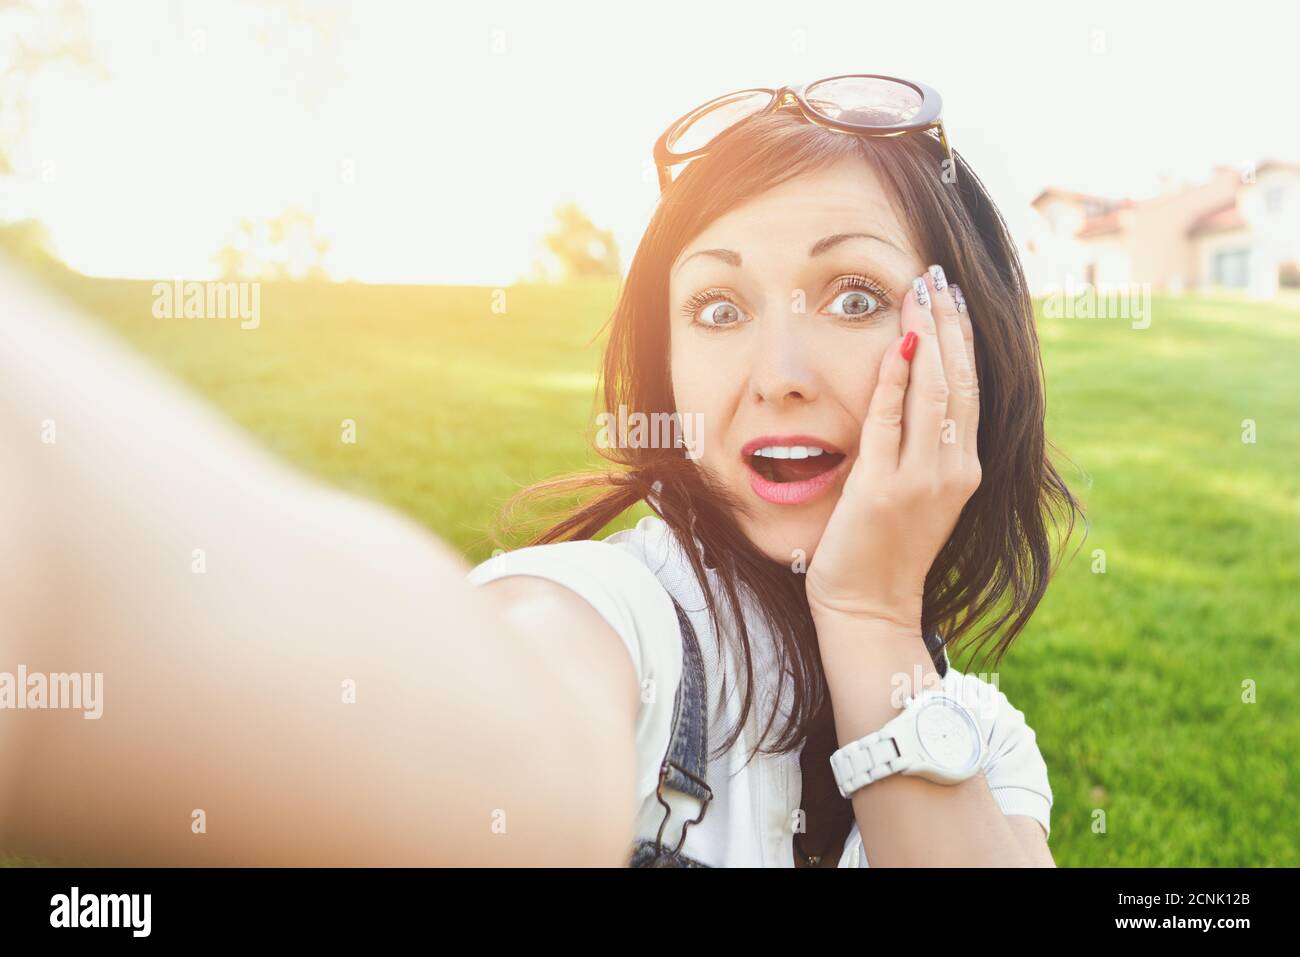 Emozione divertente, donna adulta che si diverte in natura, prendendo selfie. Concetto di divertimento Foto Stock